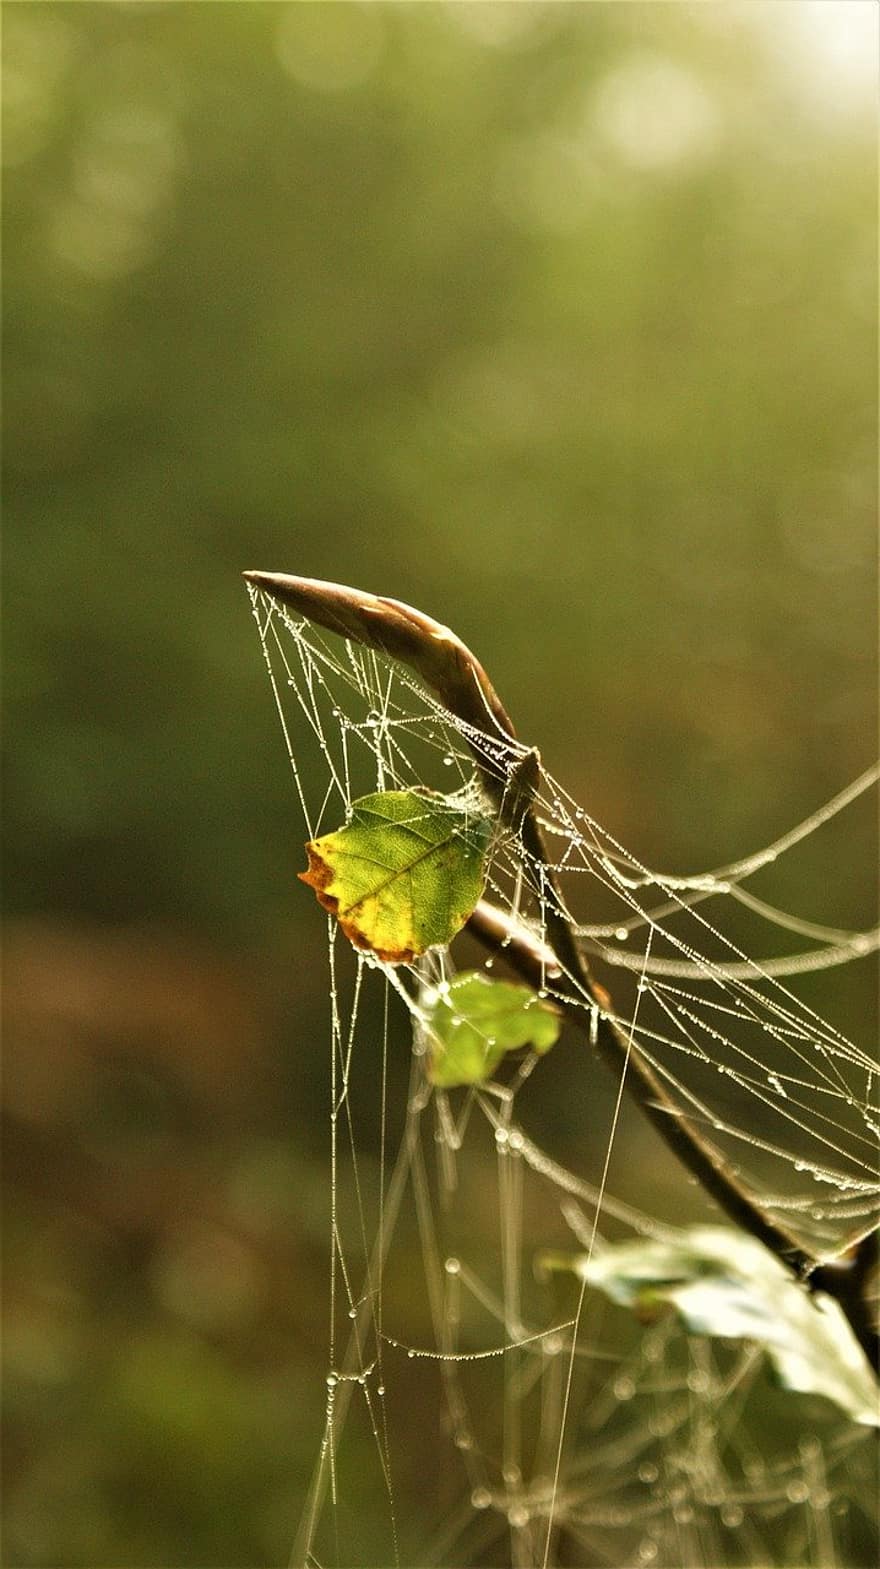 örümcek ağı, çiy damlası, doğa, kapatmak, Yaprak, makro, örümcek, açık havada, sonbahar, bitki, düşürmek